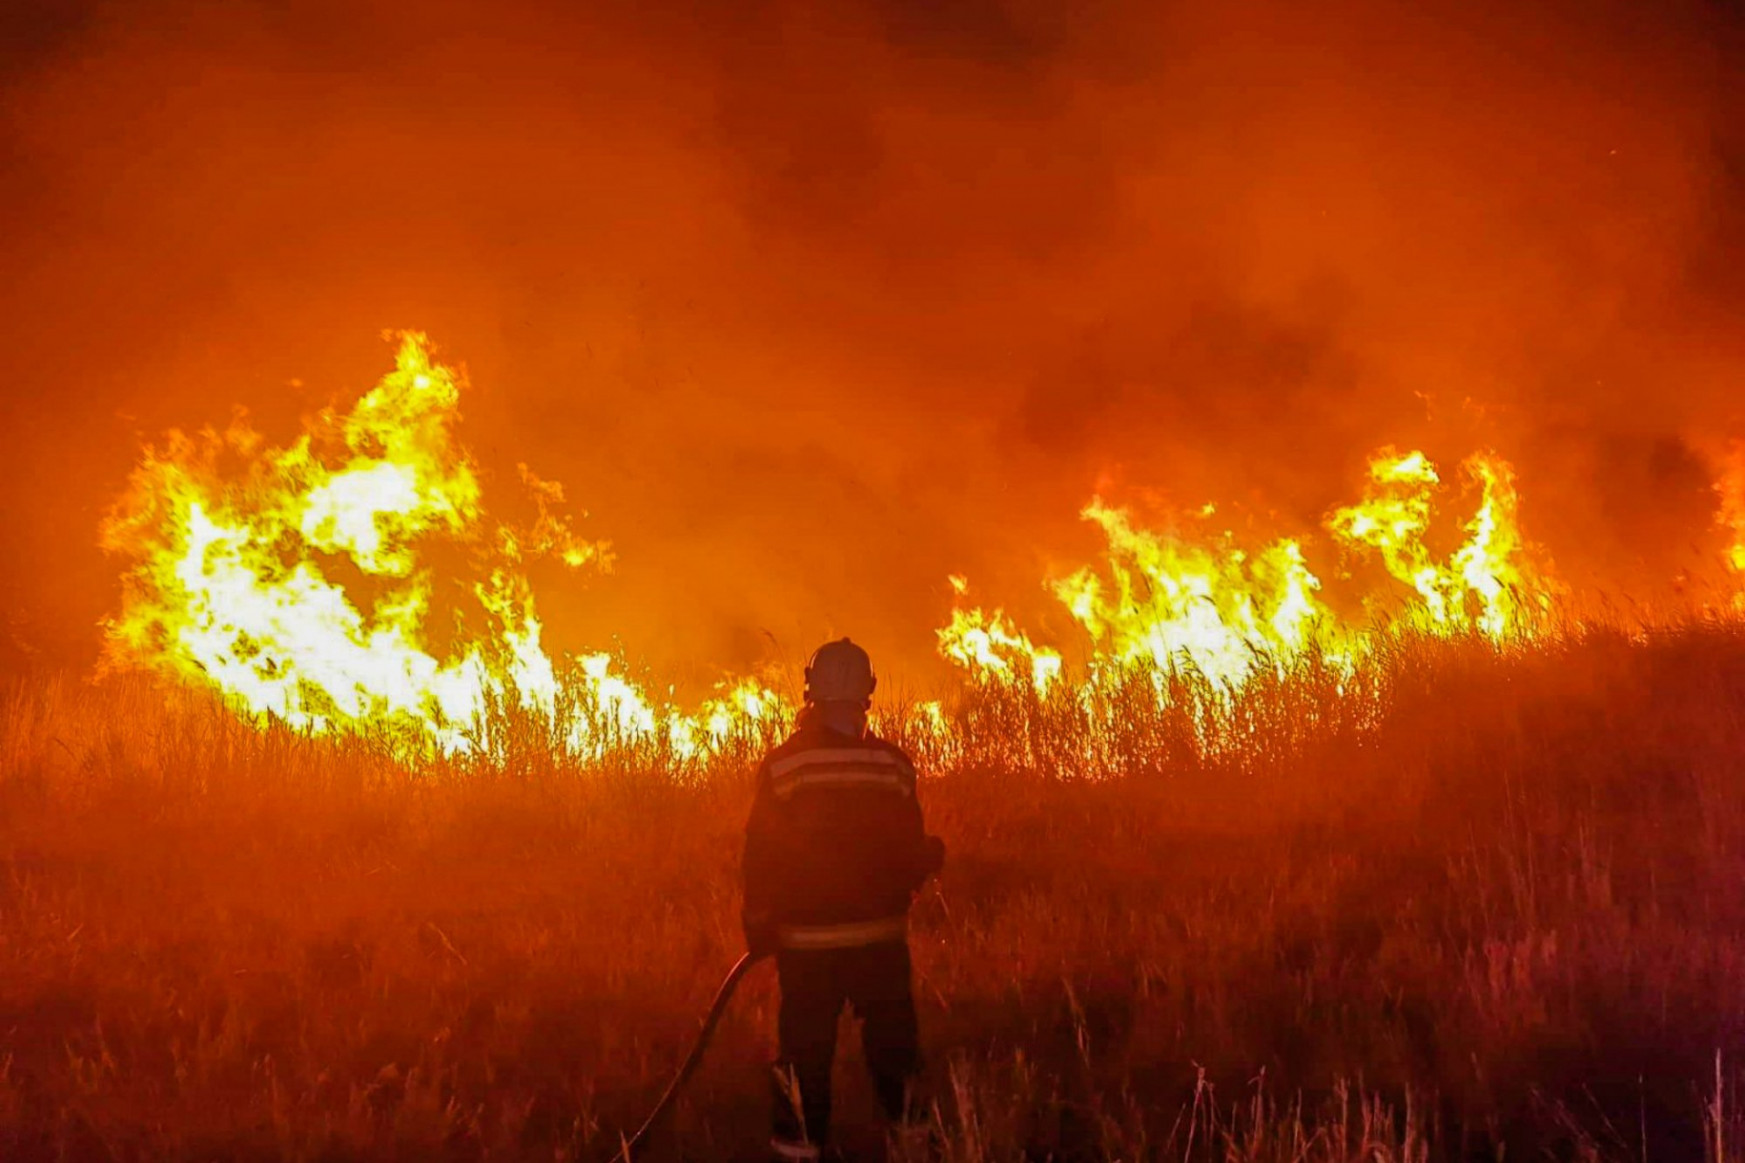 Hétszázötven hektáron, foltokban kapott lángra az erdő aljnövényzete és nádas-bozótos területek Tiszafüred-Kócsújfalu határában, a Hortobágyi Nemzeti Park területén, július 20-án – Fotó: BM Országos Katasztrófavédelmi Főigazgatóság